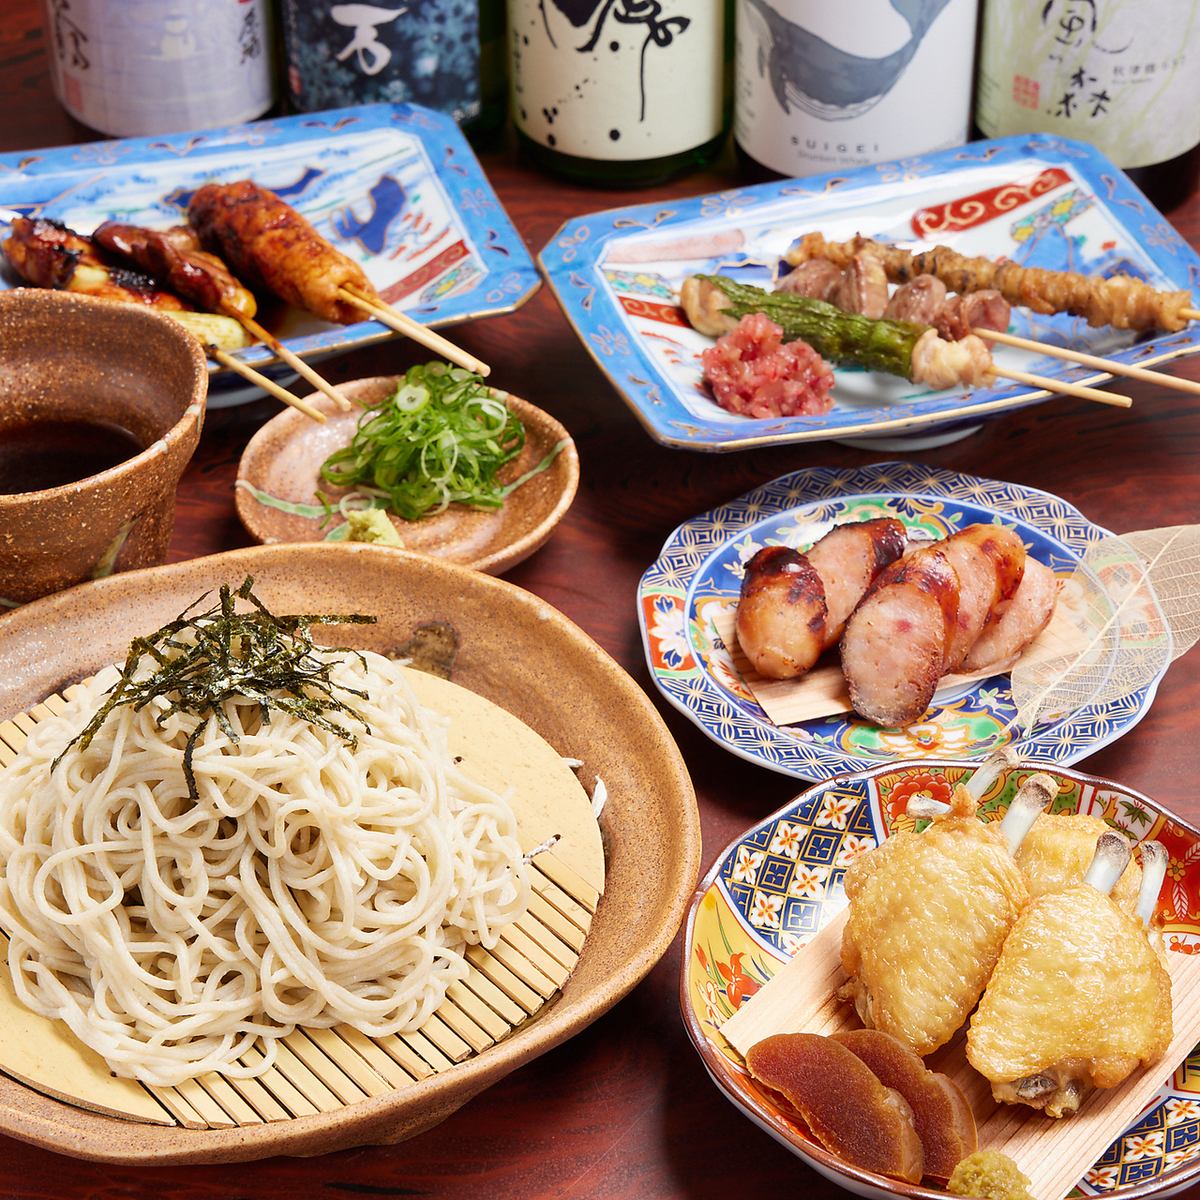 お店自慢の逸品「二八蕎麦」は、粗挽きの滋賀県竜王産蕎麦粉を使用した香り高い一品。